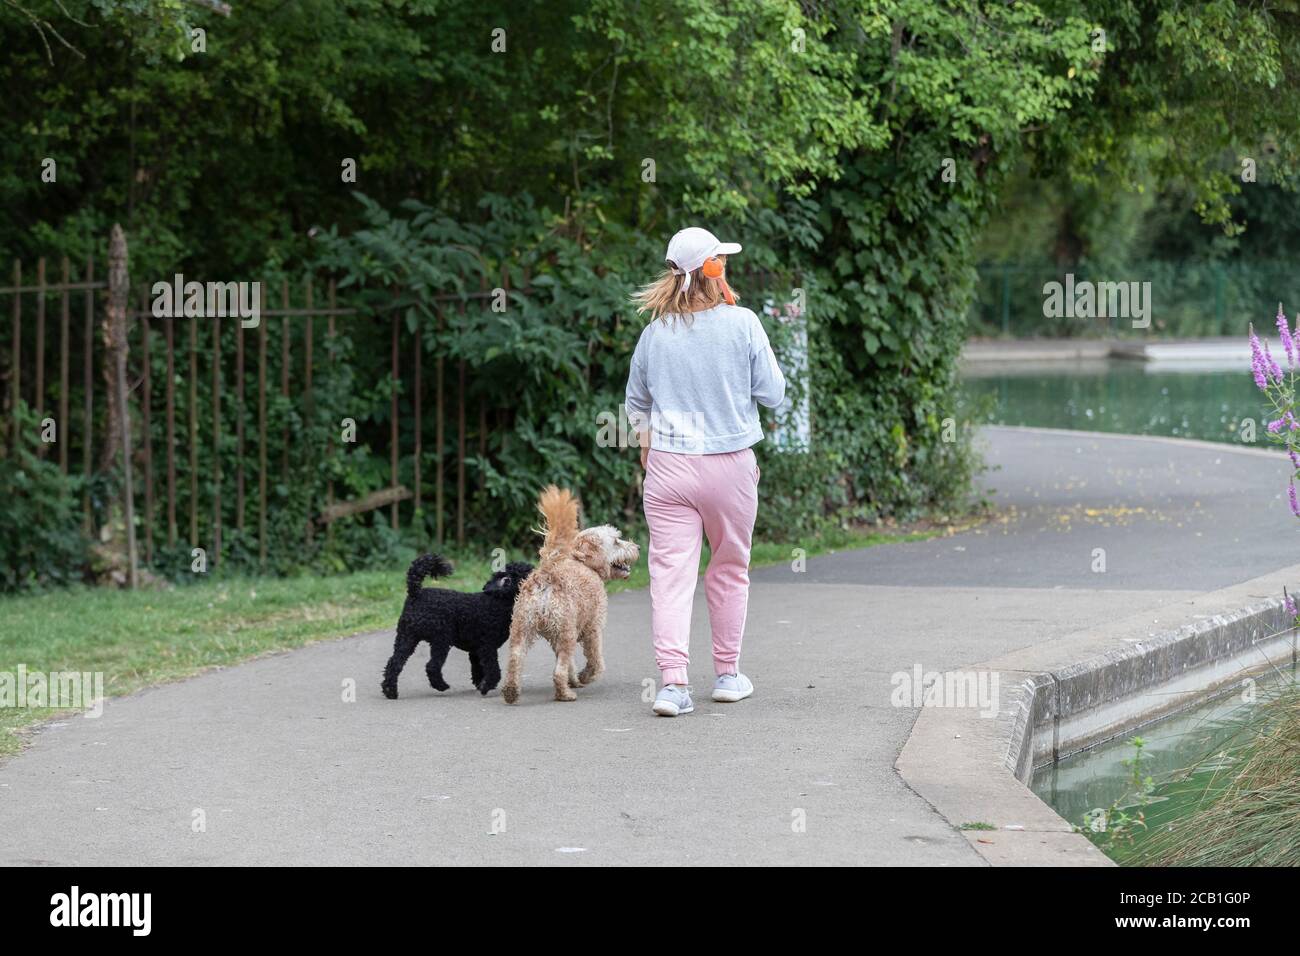 Northampton, Royaume-Uni. 10 août 2020. Les gens qui sortent avec leurs chiens pour le matin marchent tandis que l'air est encore frais car il se réchauffera plus tard dans la matinée, Abington Park, Northampton, Angleterre, Royaume-Uni. Crédit : Keith J Smith/Alamy Live News Banque D'Images